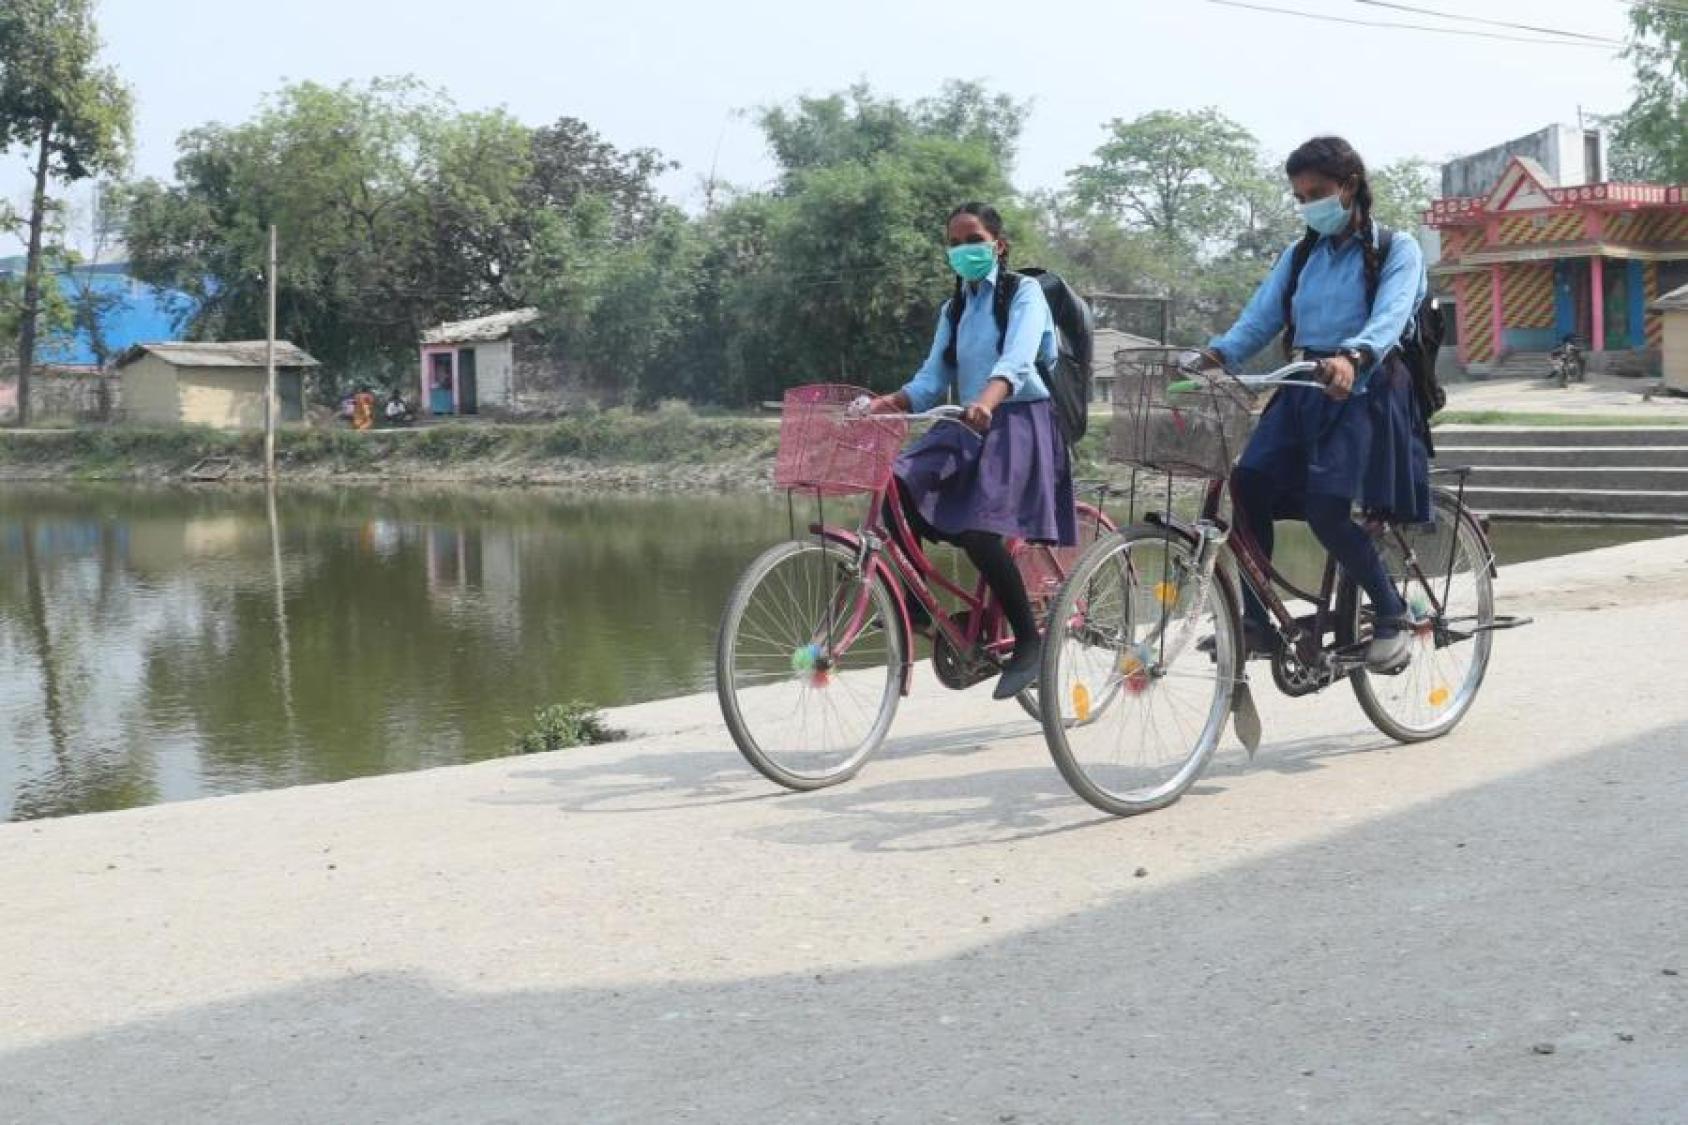 Dos chicas jóvenes con uniforme escolar van en bicicleta por un camino de tierra cerca de una masa de agua.